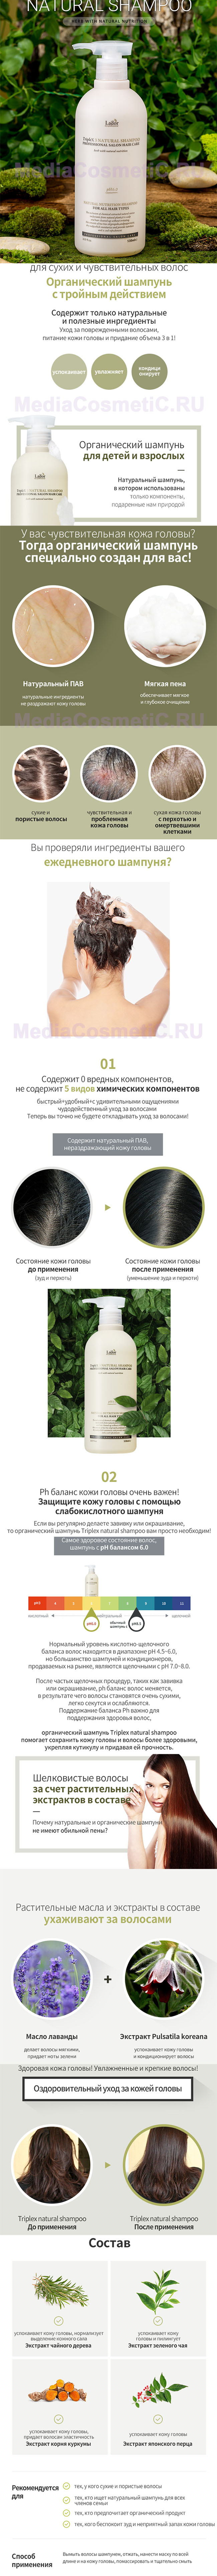 Органический бессульфатный шампунь Ладор Lador Triplex3 Natural Shampoo